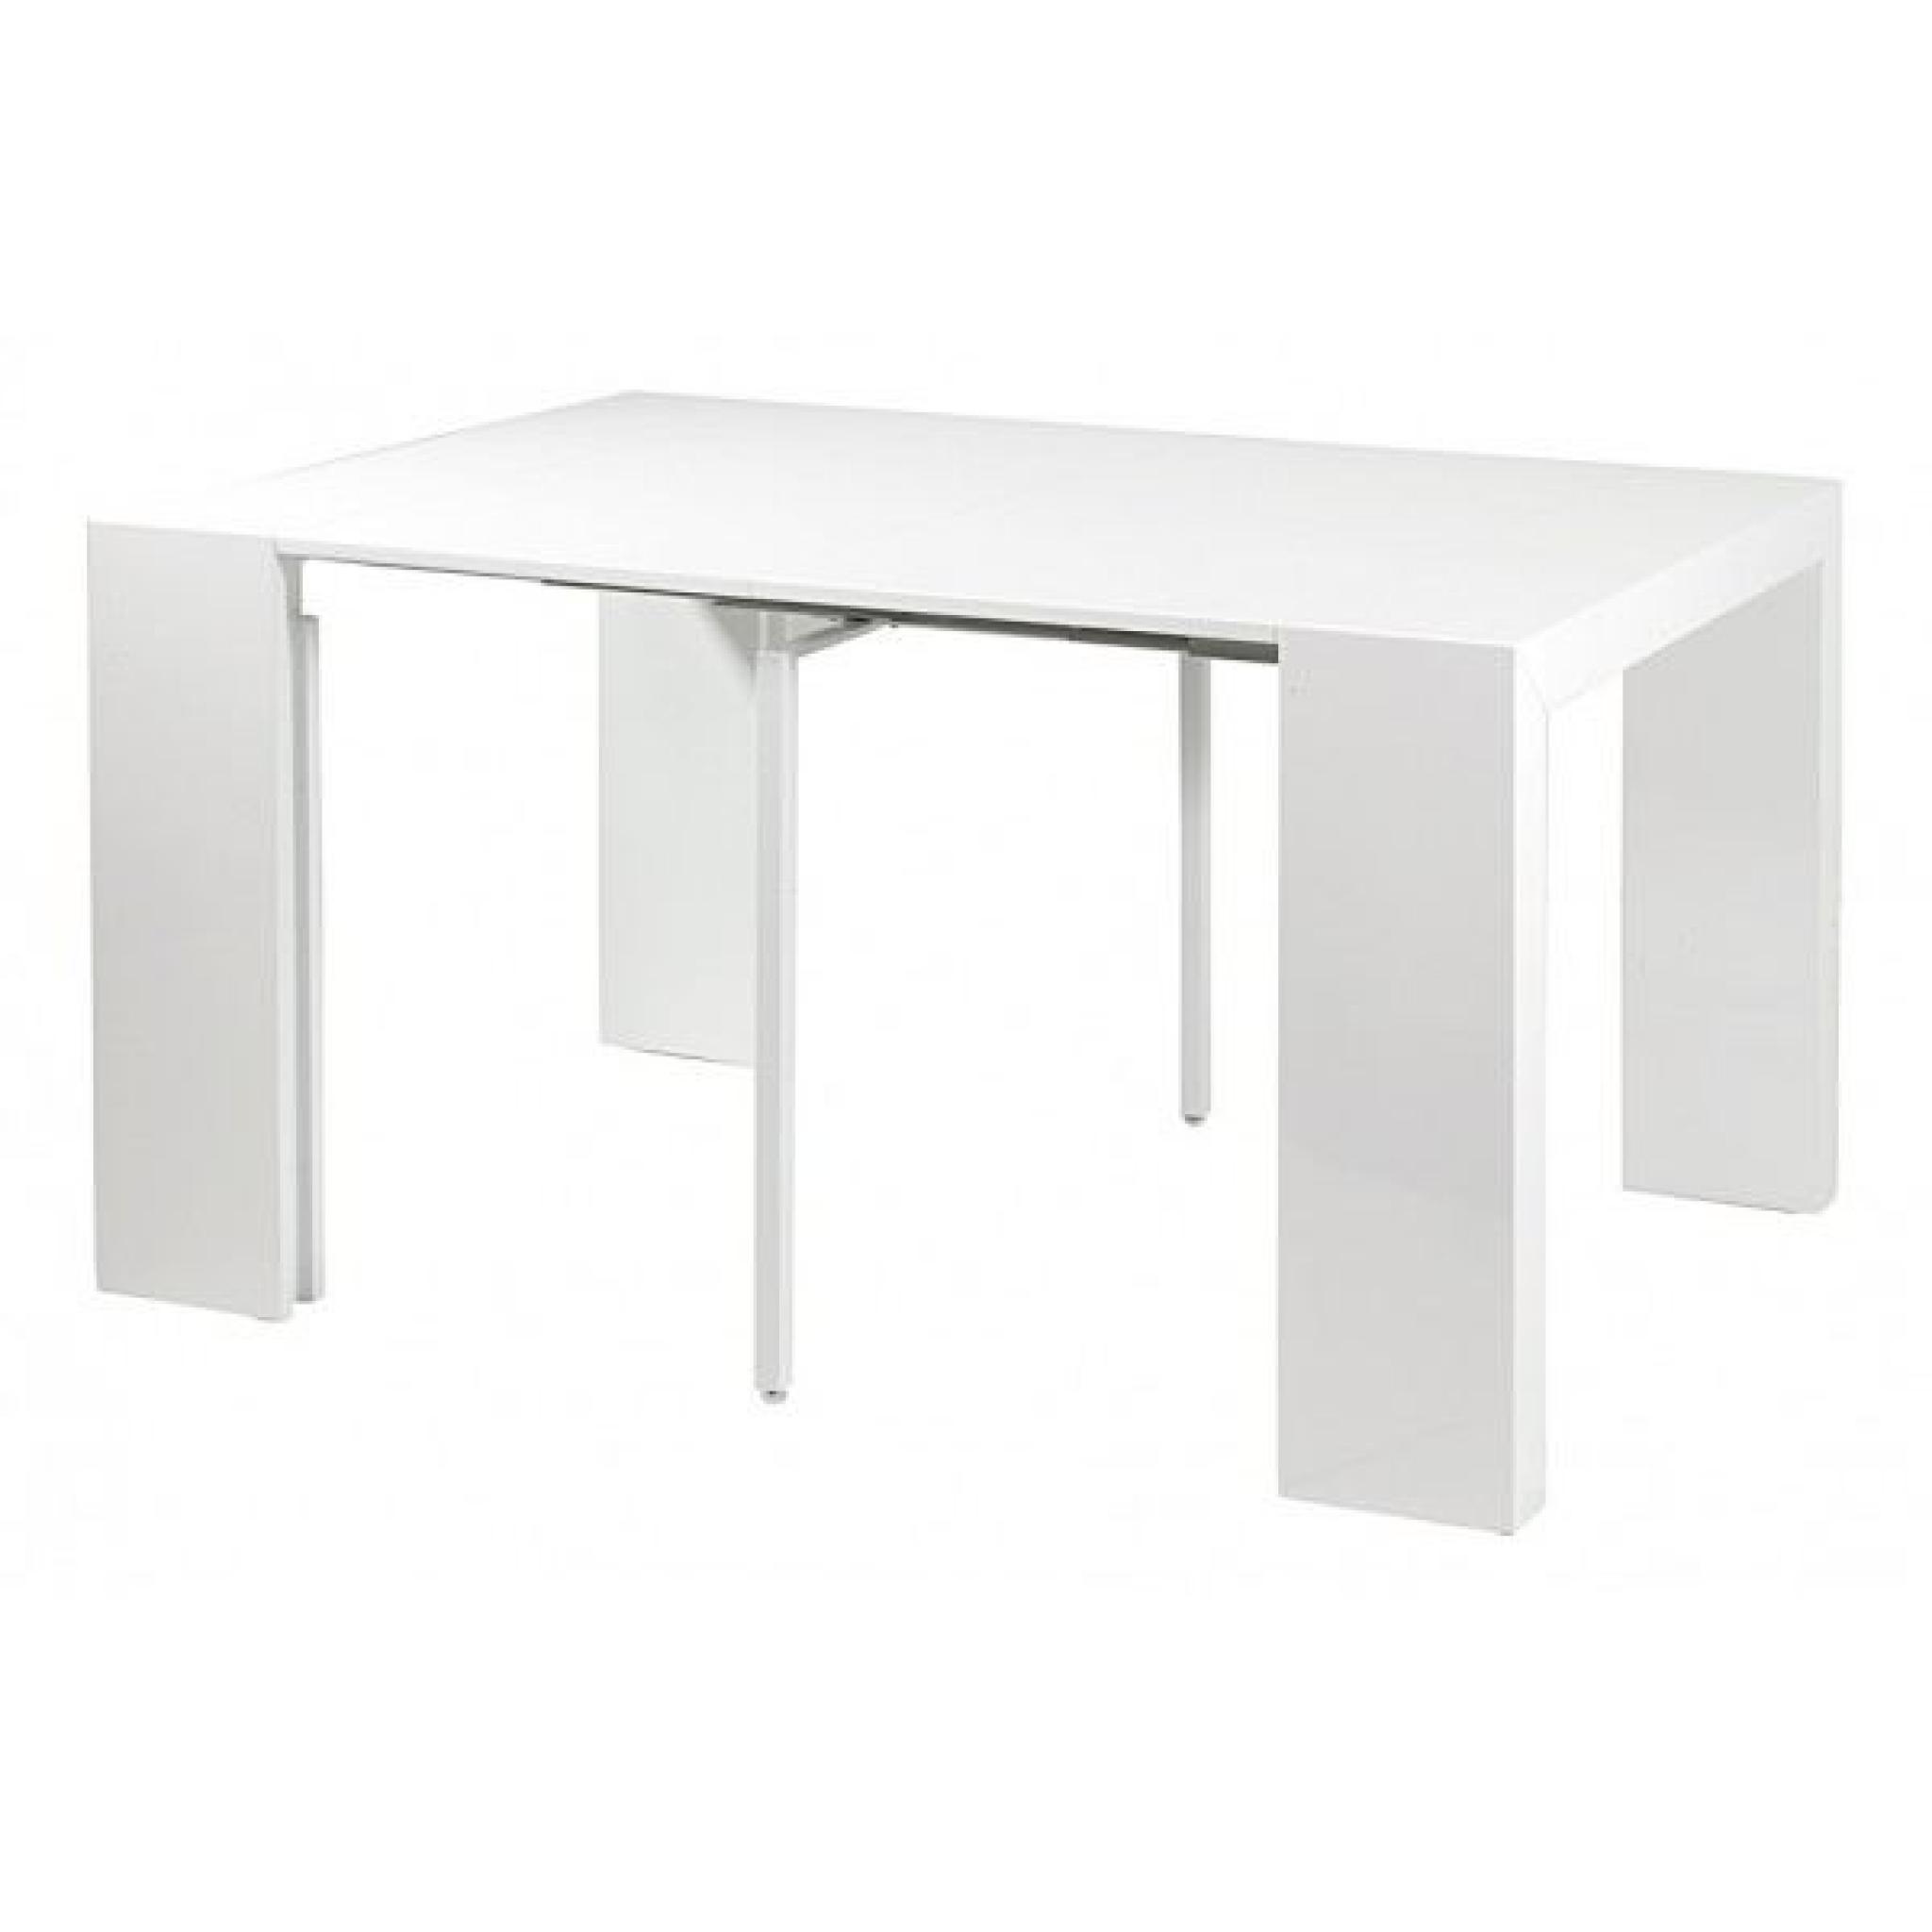 Table console extensible Orianne - Gris clair pas cher